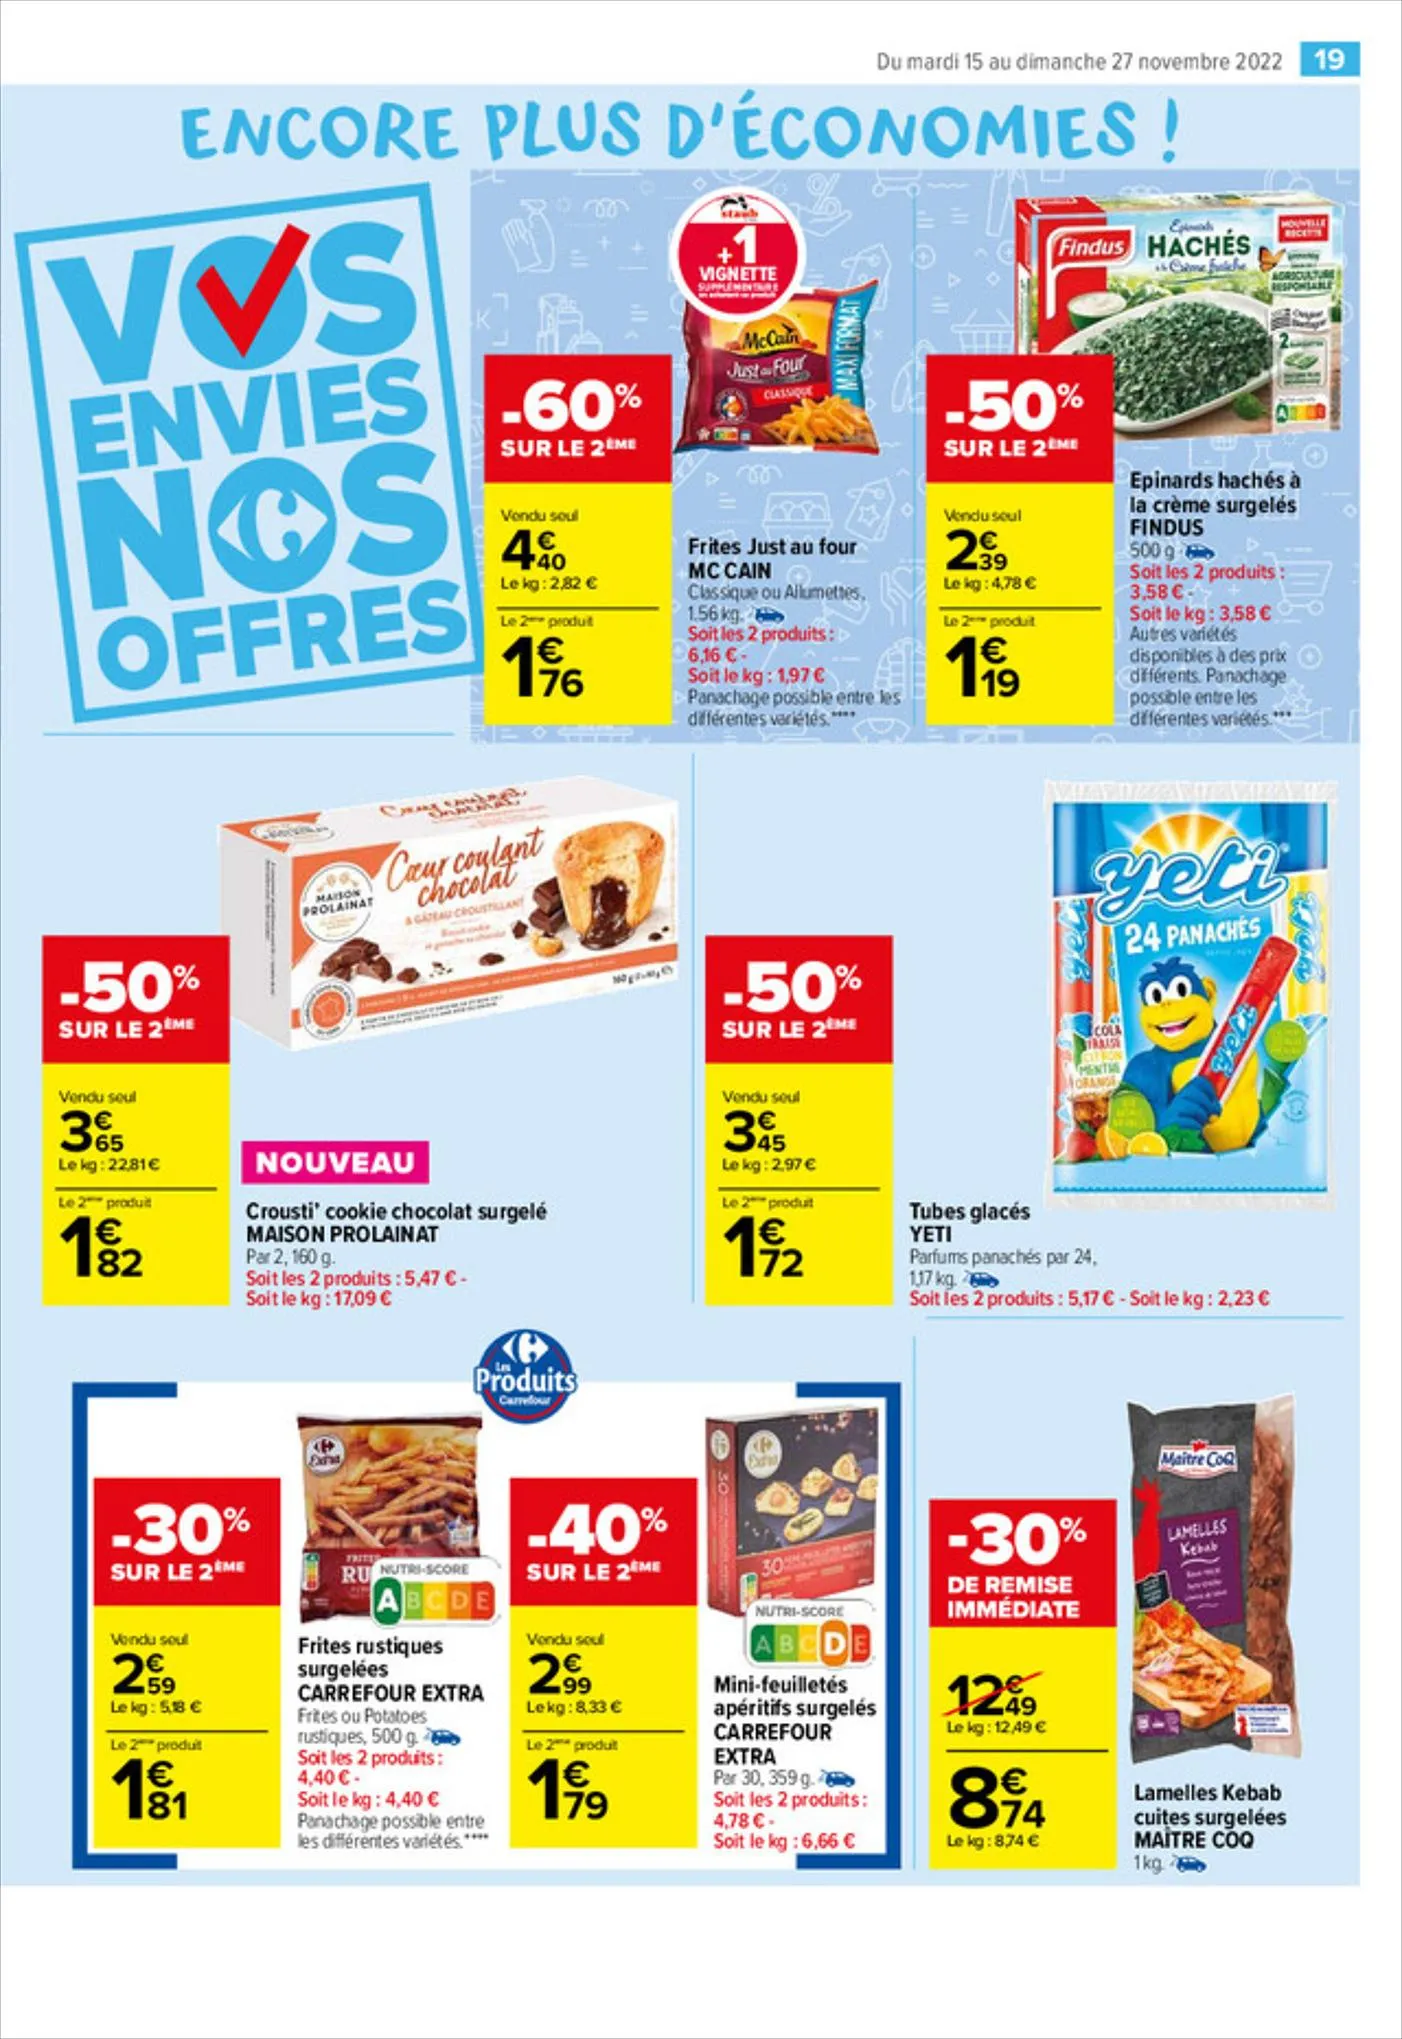 Catalogue Vos envies nos promos Ferrero, page 00021